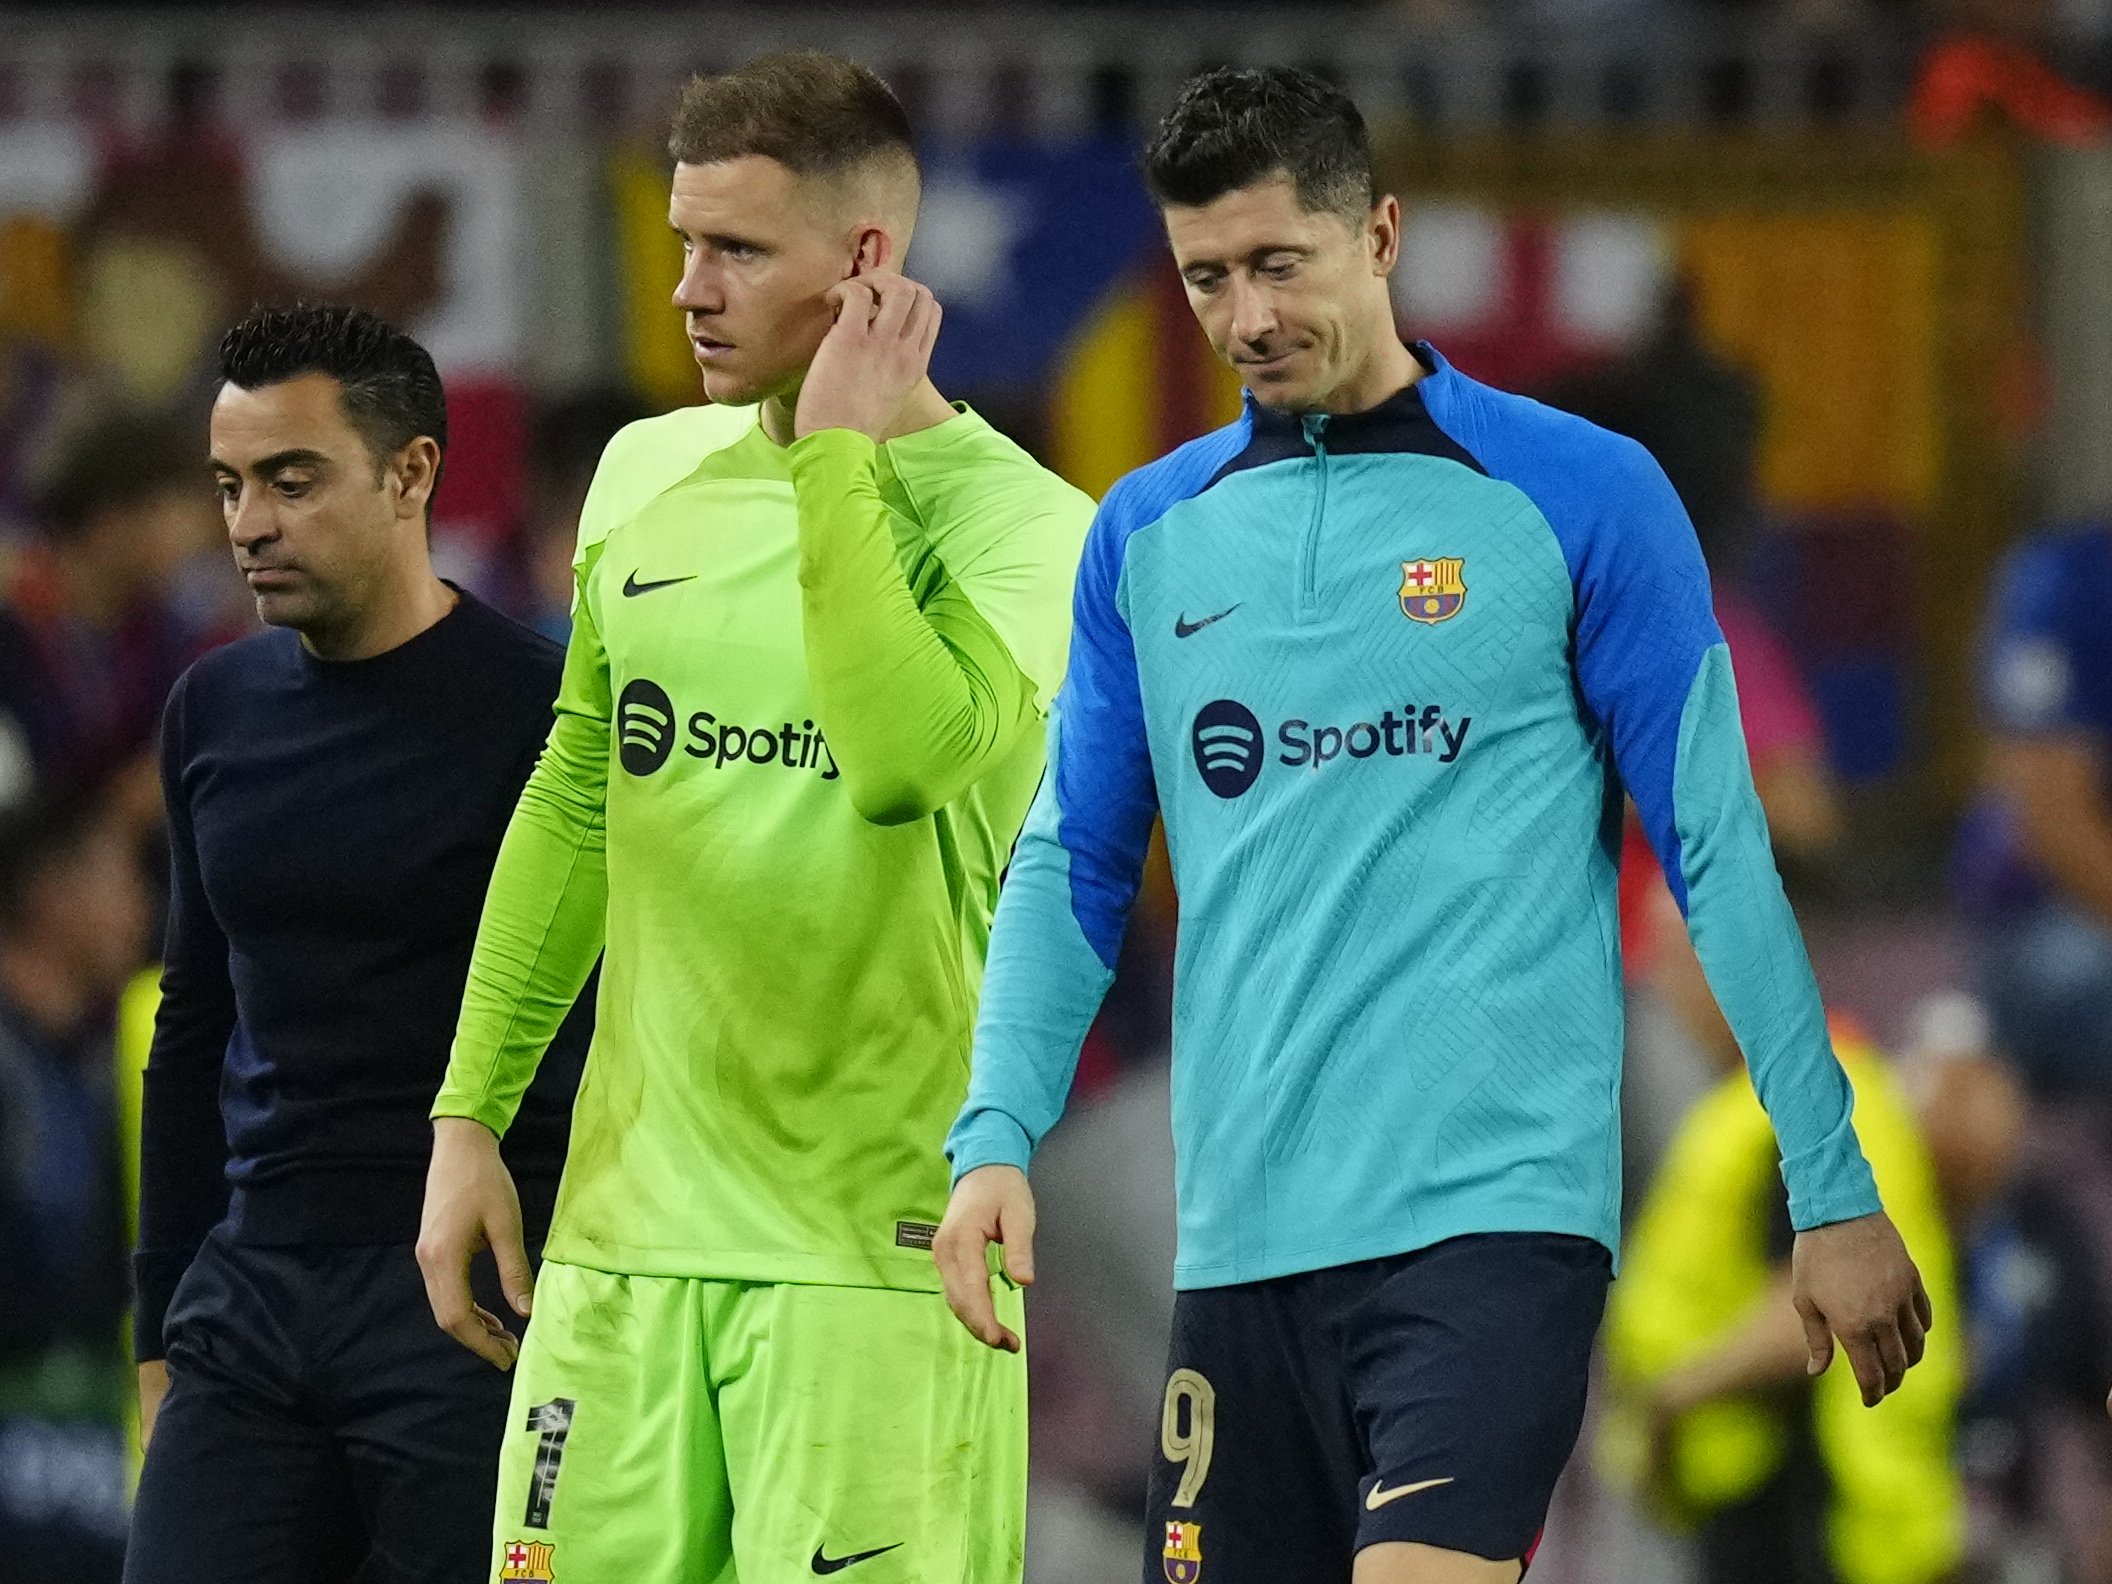 Compte amb els rivals del Barça de Xavi Hernández a l'Europa League perquè ja hi ha 2 complicats